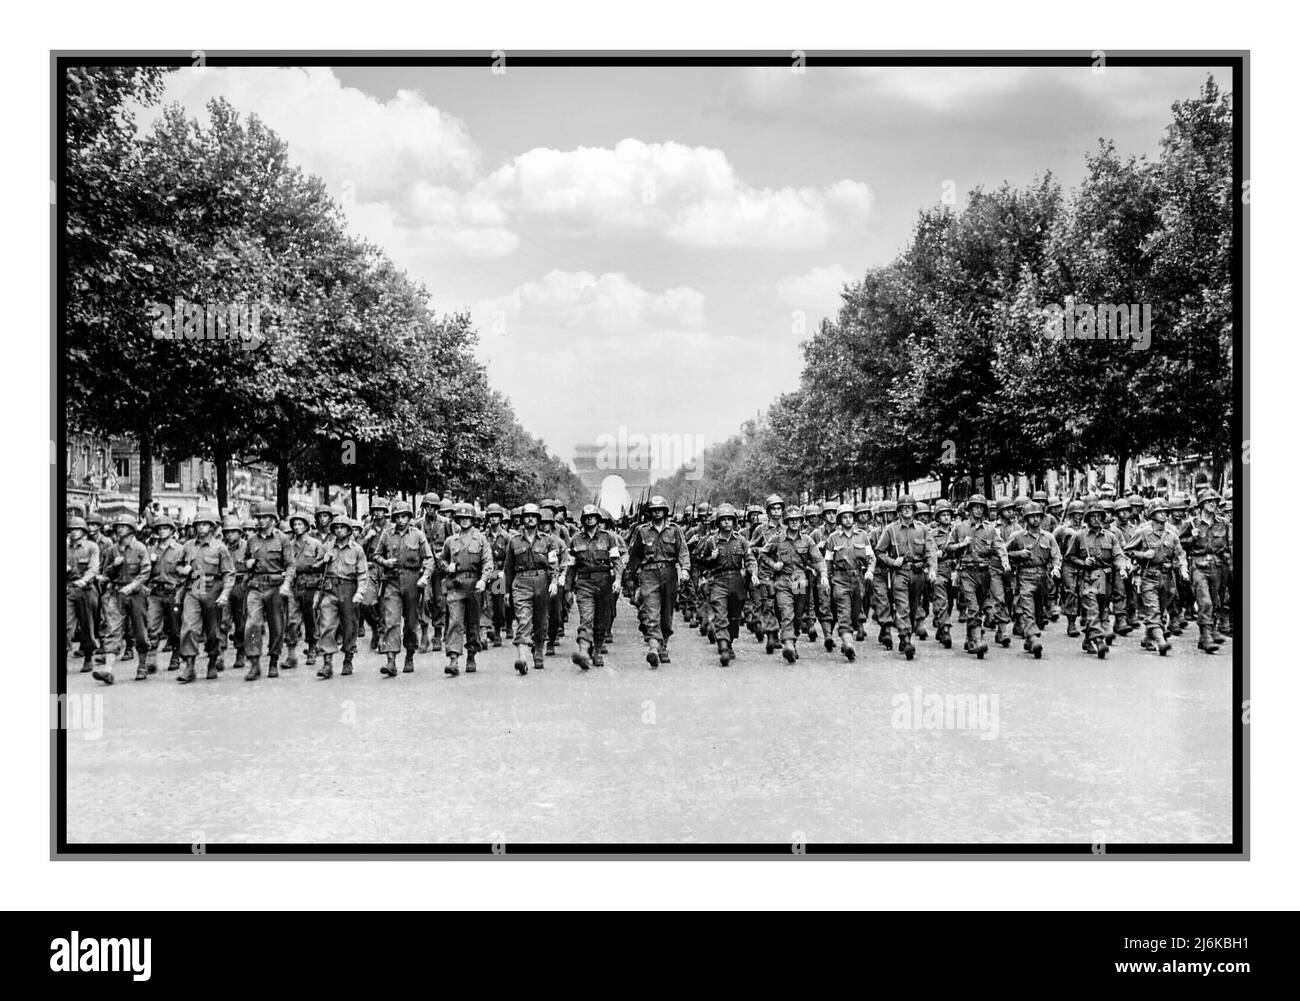 PARIGI WW2 VITTORIA LIBERAZIONE NAZISTA GERMANIA truppe americane della Divisione fanteria del 28th marzo lungo l'Avenue des Champs-Élysées, Parigi, nella parata della Vittoria. Data 29 agosto 1944 Foto Stock